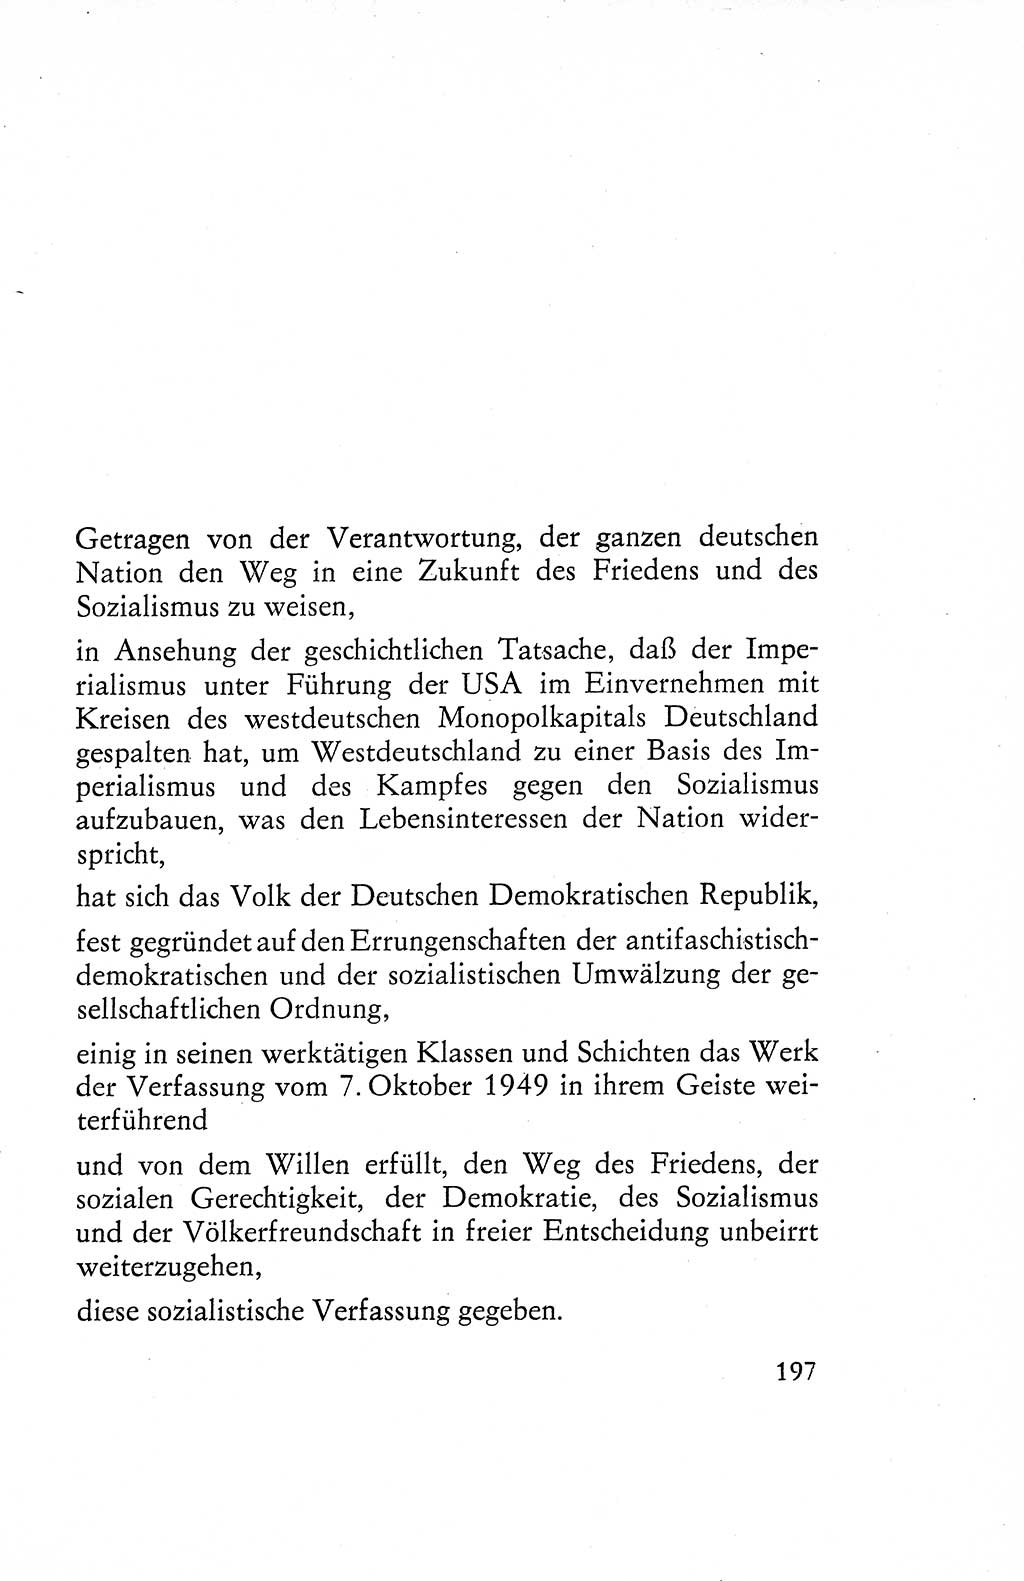 Verfassung der Deutschen Demokratischen Republik (DDR), Dokumente, Kommentar 1969, Band 1, Seite 197 (Verf. DDR Dok. Komm. 1969, Bd. 1, S. 197)